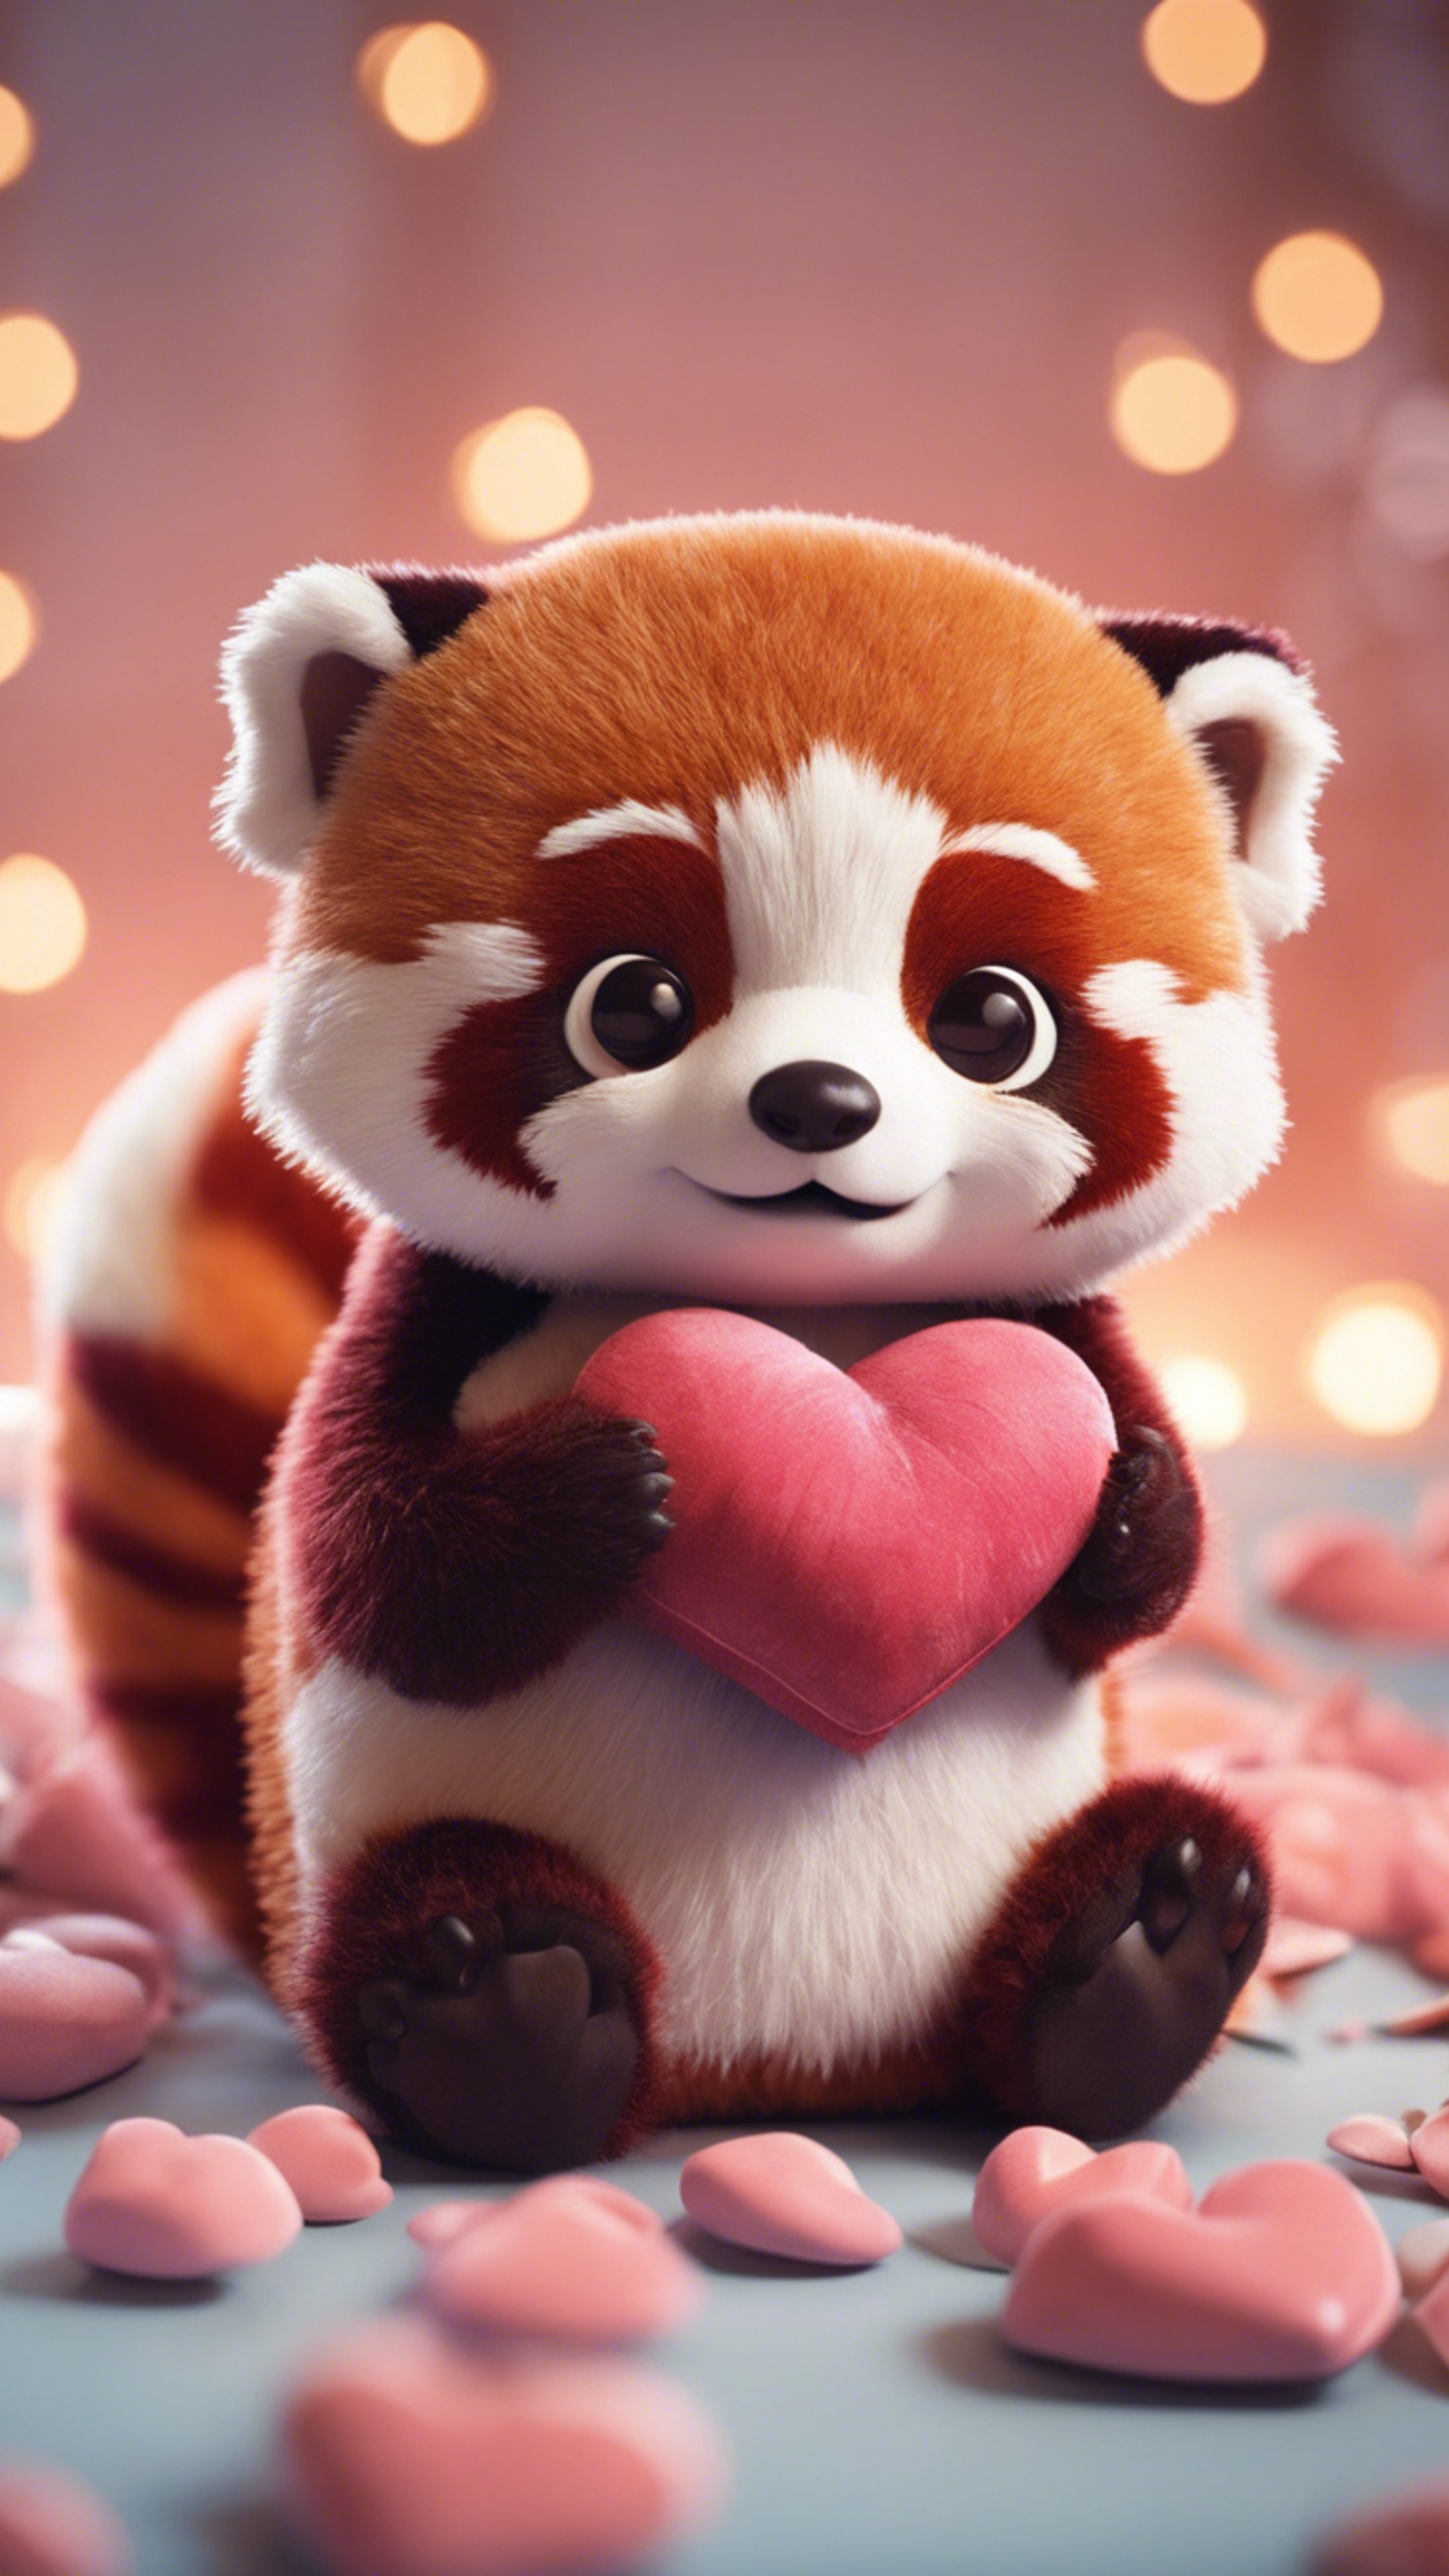 A kawaii red panda, wide-eyed, hugging a heart-shaped pillow. duvar kağıdı[45d6f15b7fce49d58985]